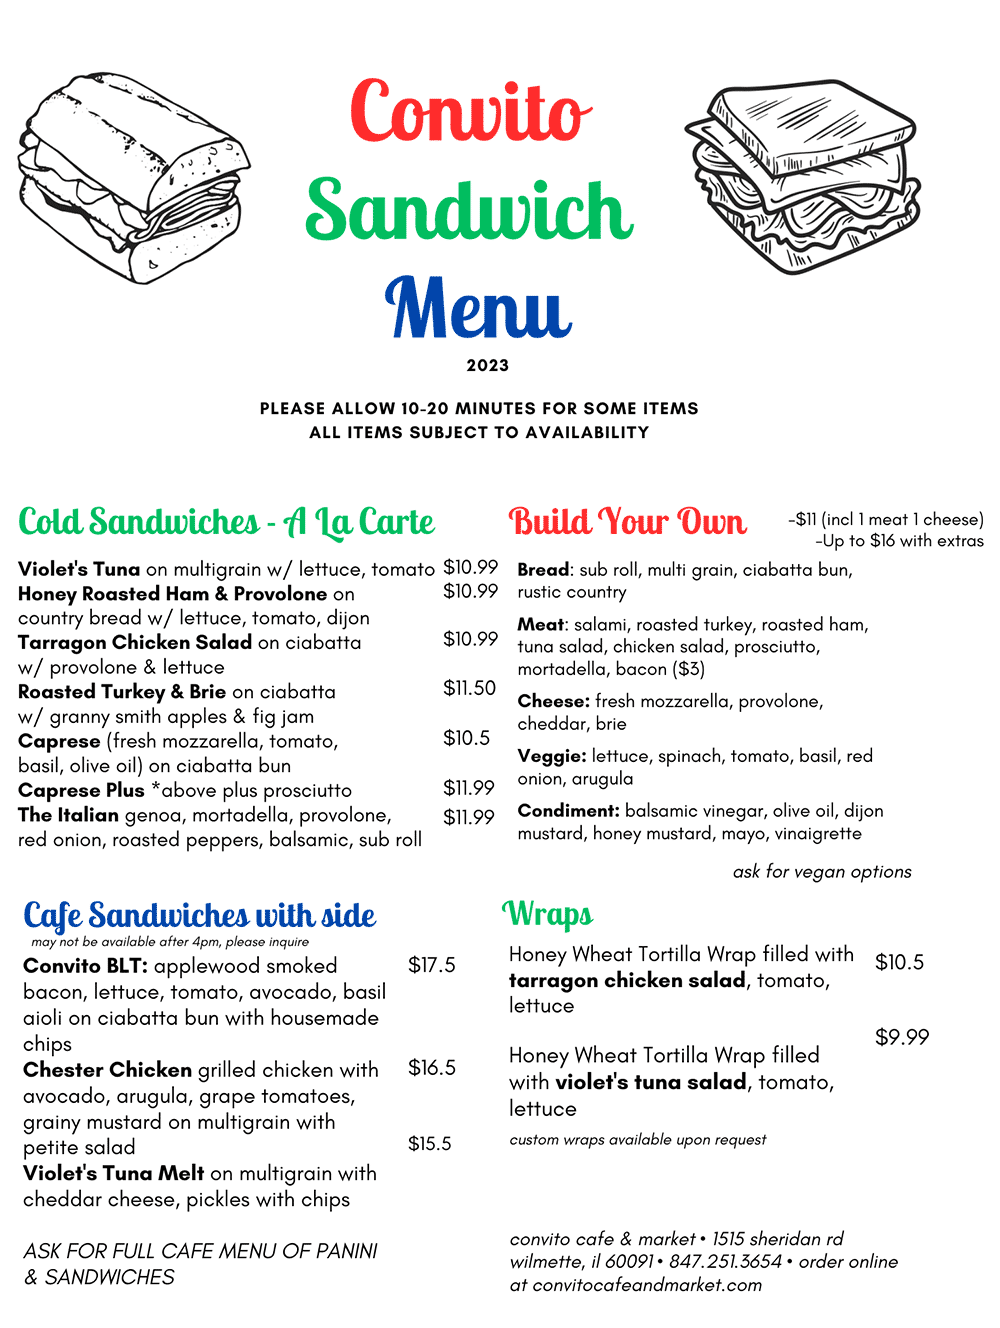 Convito Sandwich Menu 2023